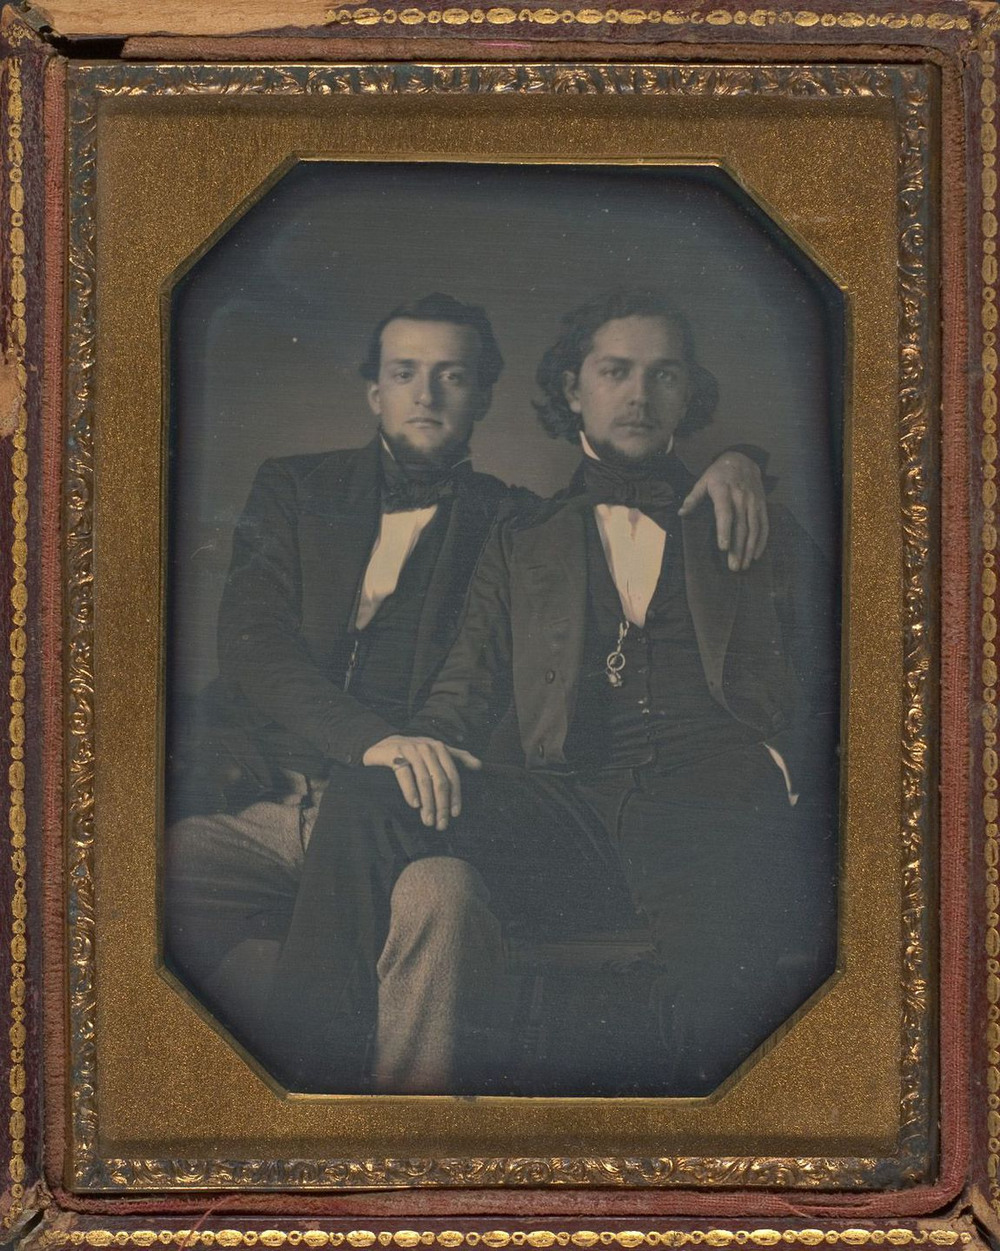 Броманс в викторианскую эпоху: интимные мужские объятия в редких фотографиях конца 1800-х годов  4